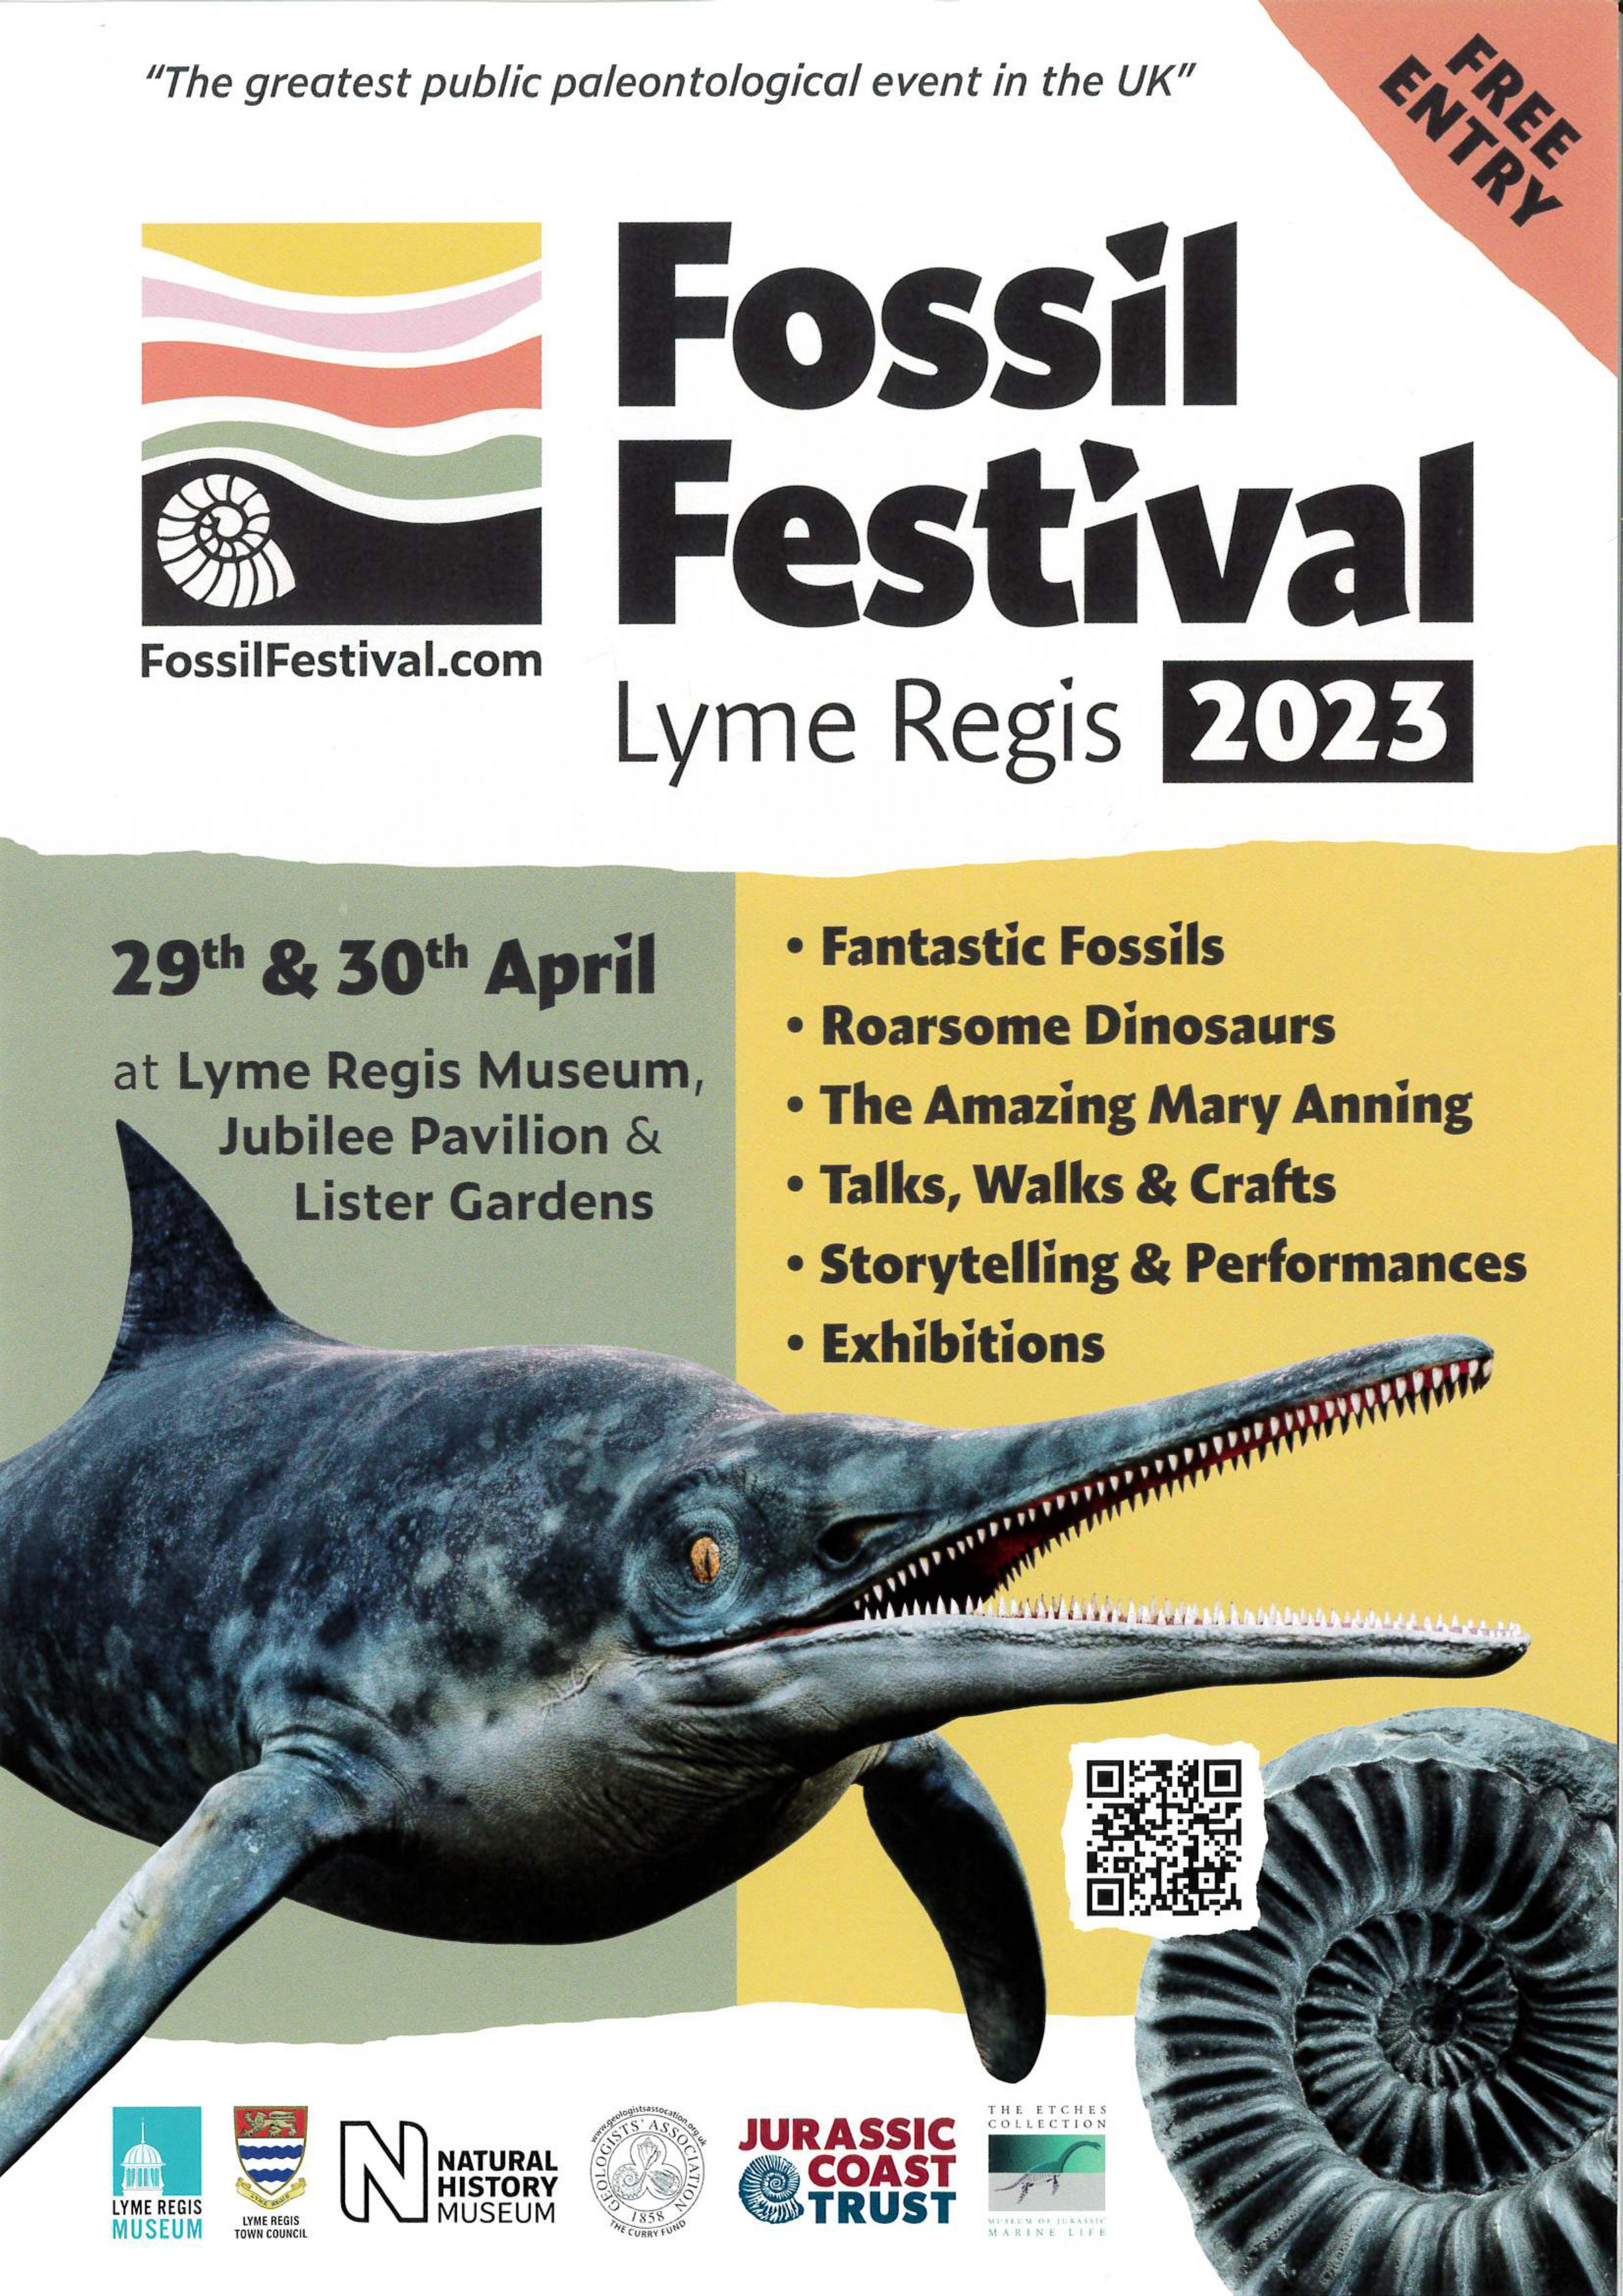 Lyme Regis Fossil Festival 2023 Lyme Regis Town Council